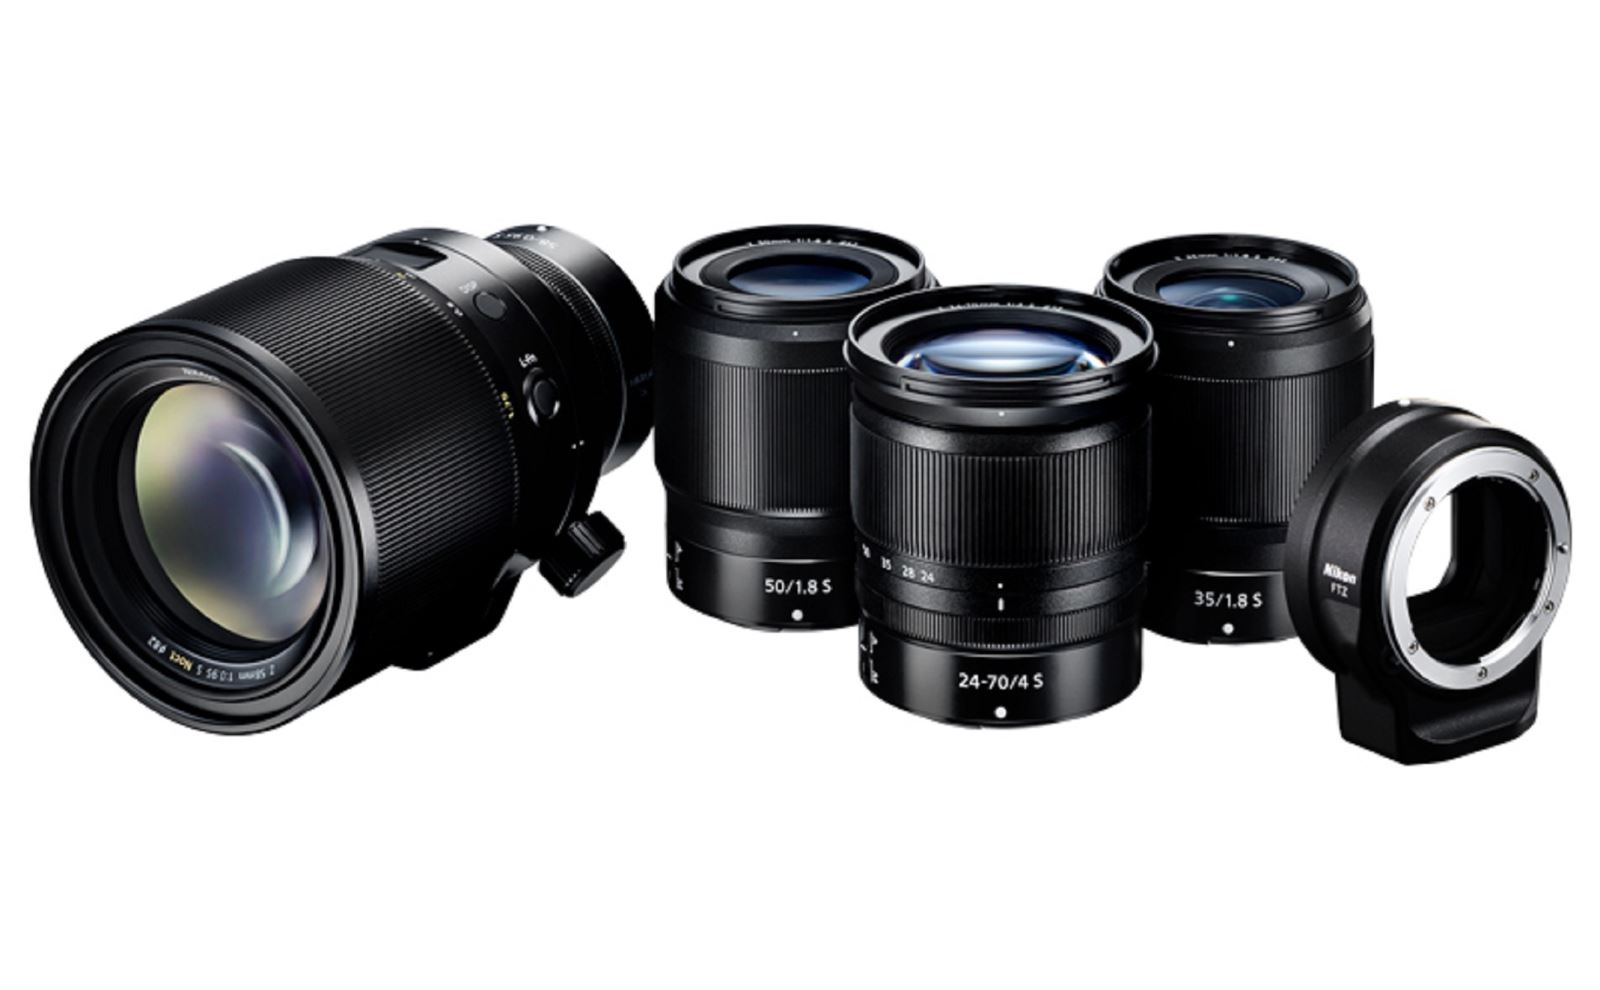 Nikon chính thức ra mắt ba ống kính NIKKOR Z dòng S dành cho Nikon Z6 và Z7